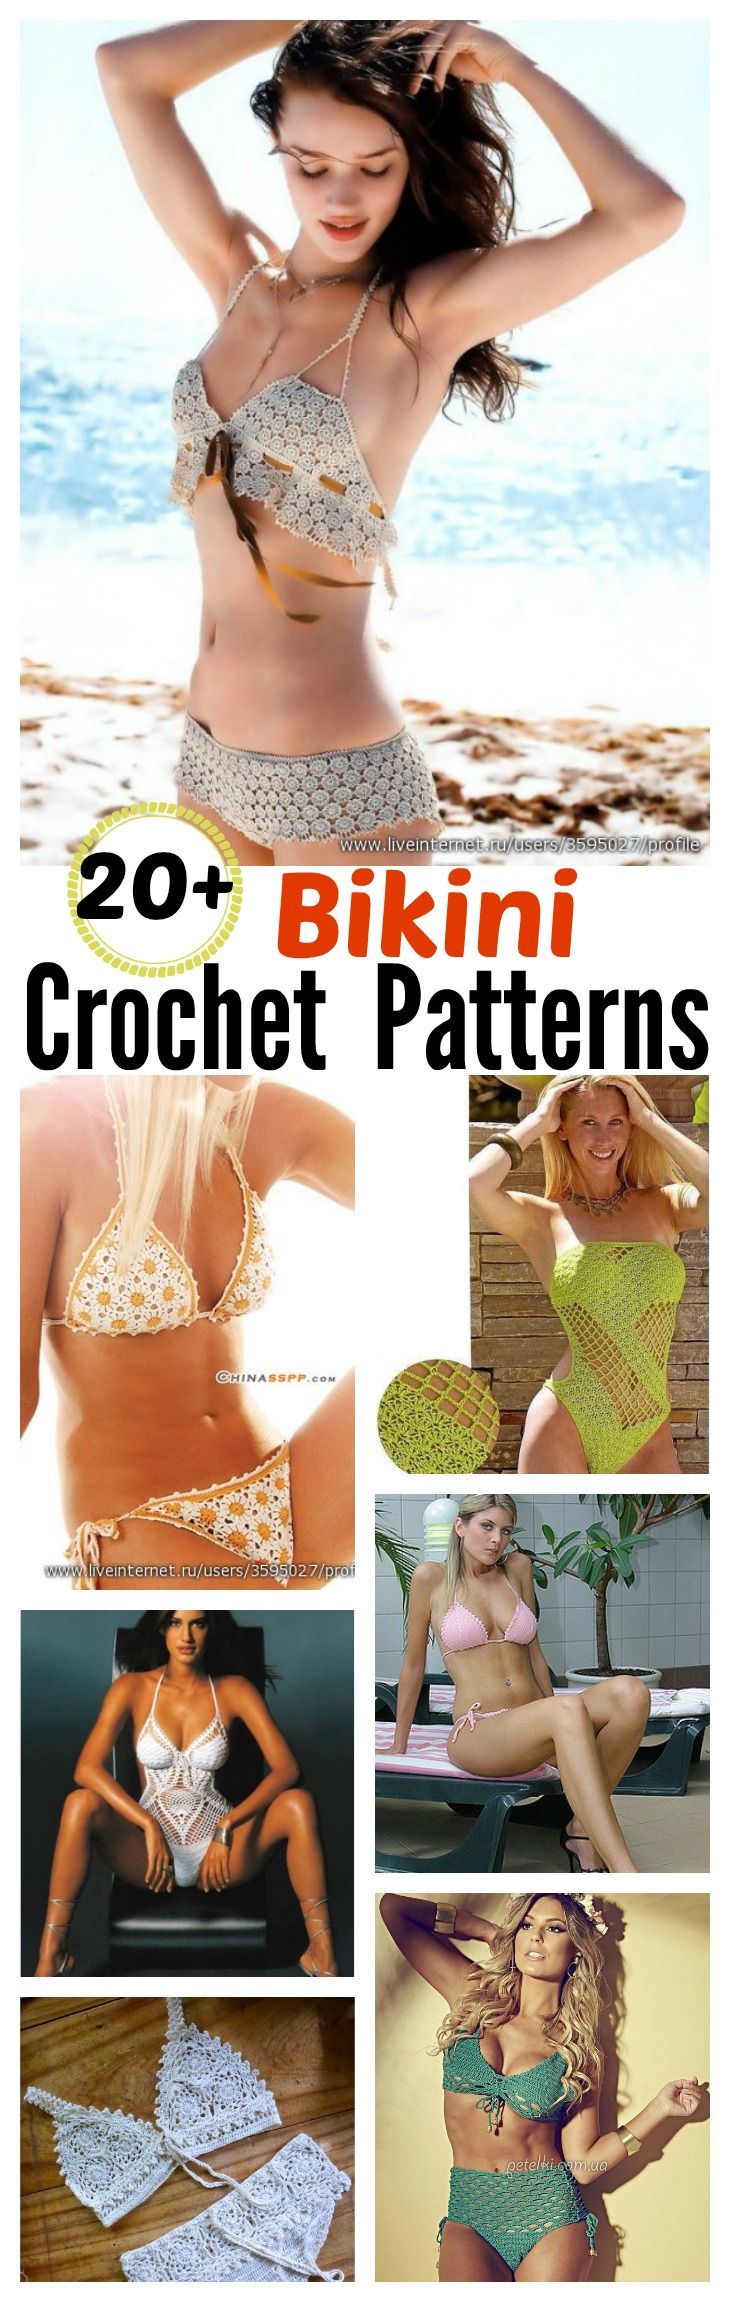 20+ Free Crochet Bikini Patterns